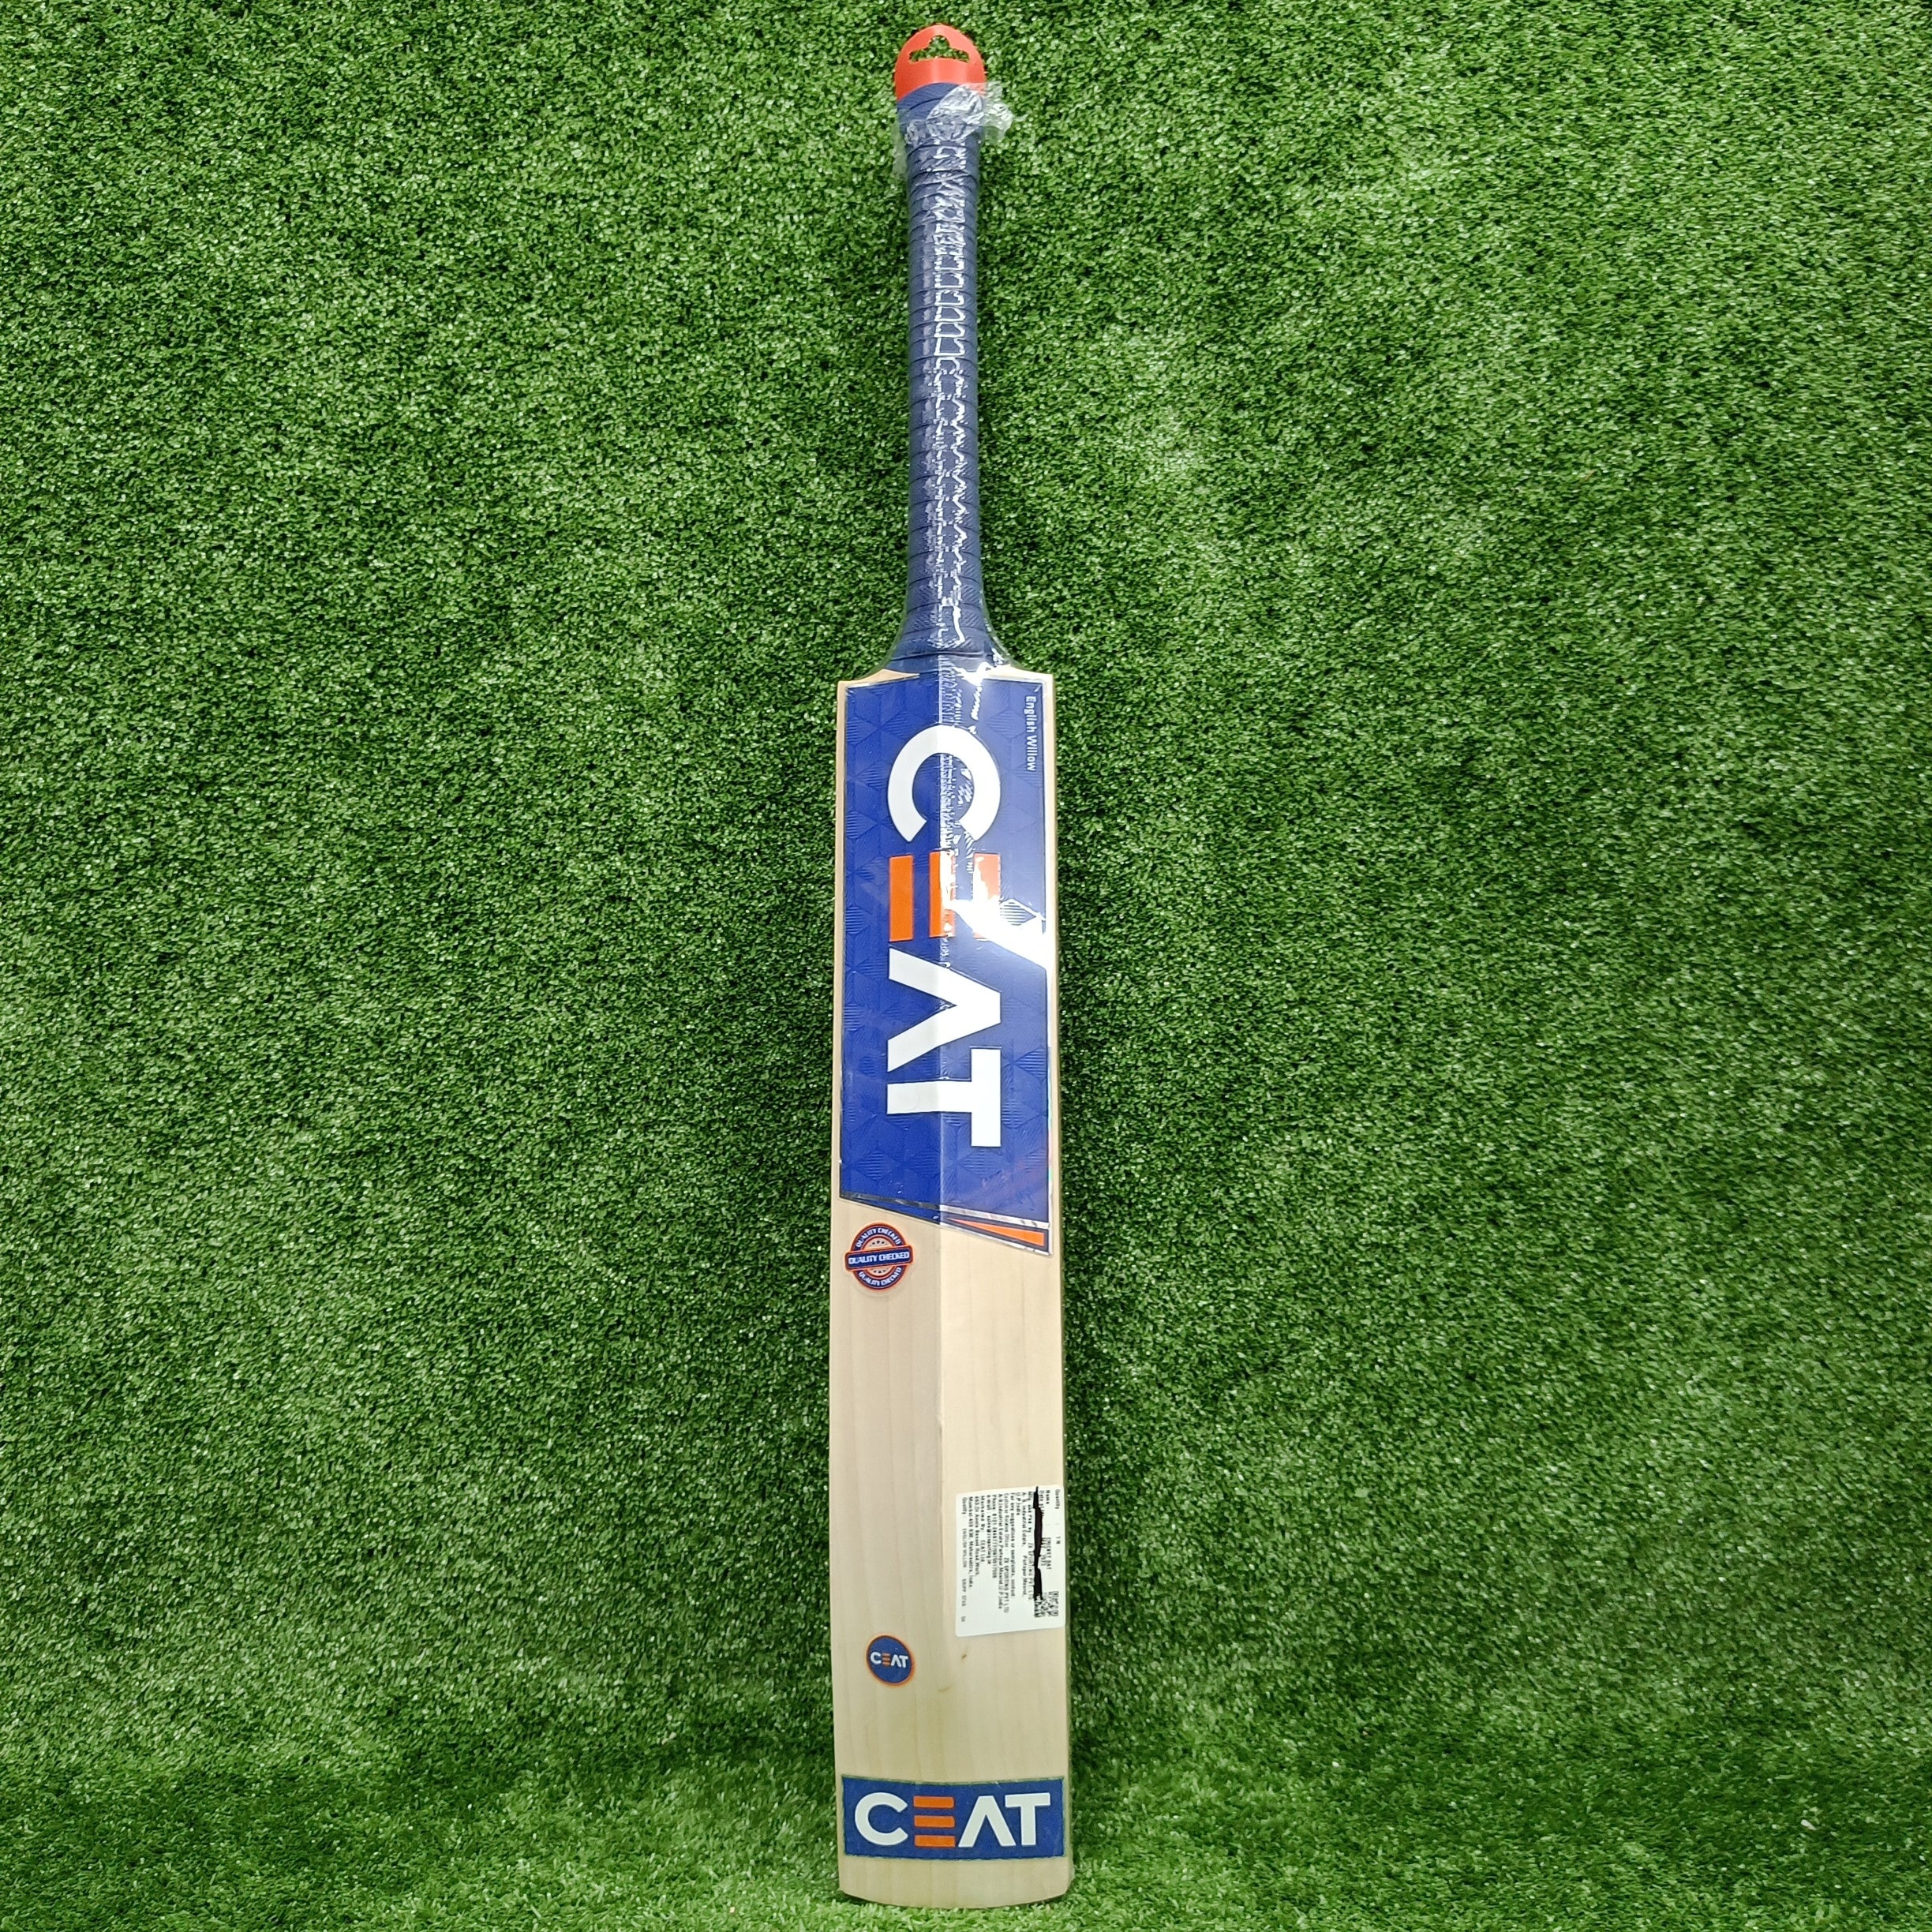 Ceat Grip Starr Cricket Bat